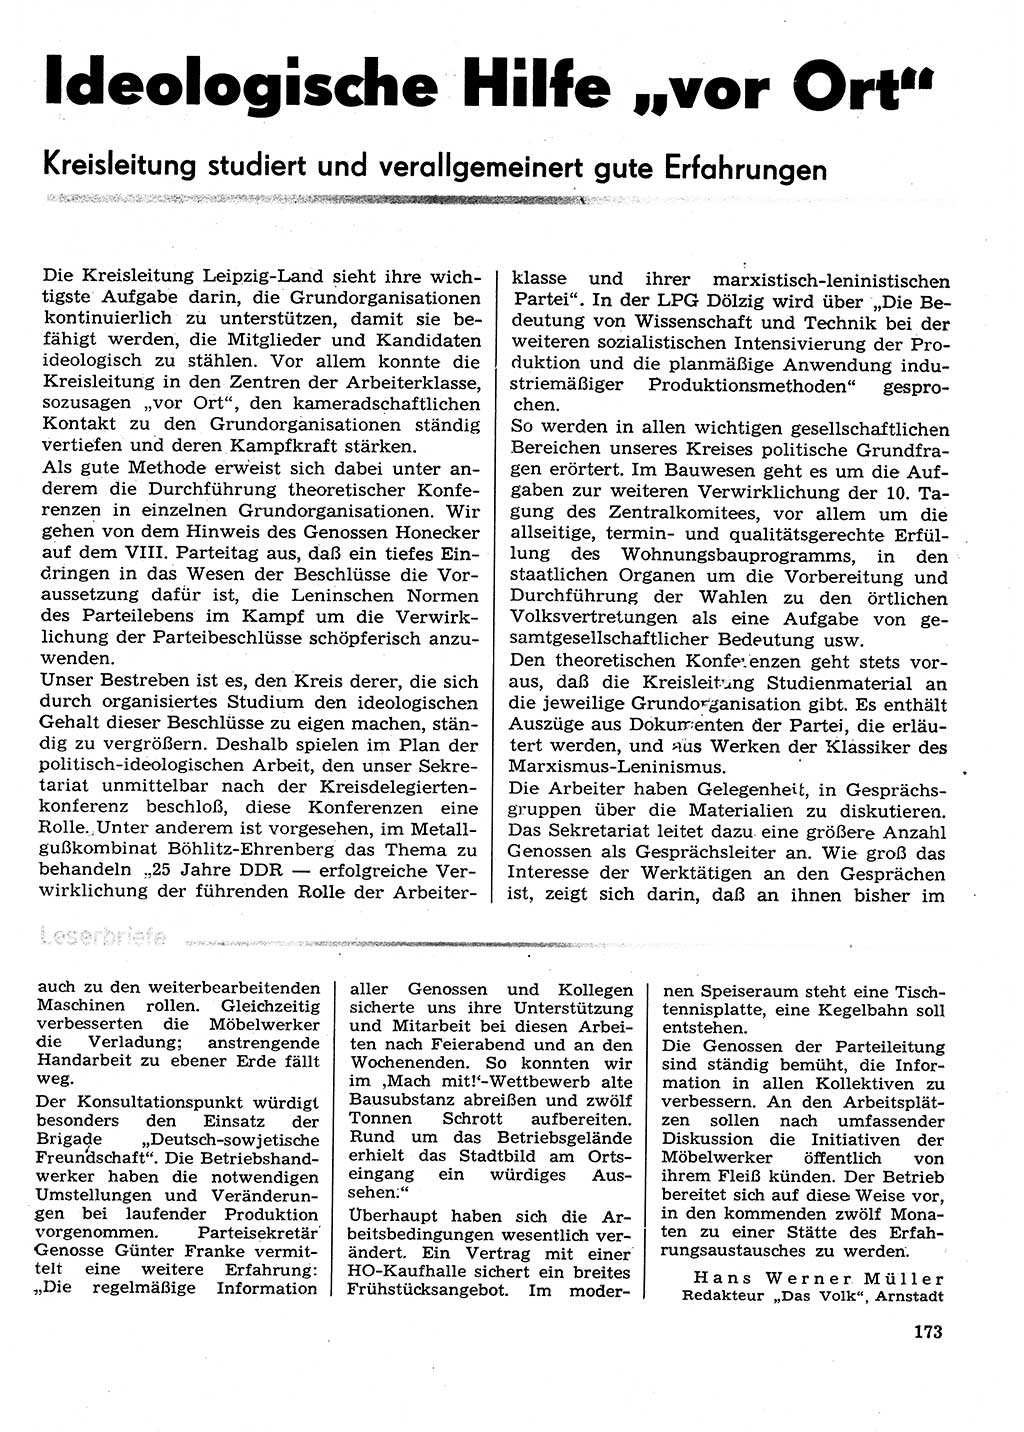 Neuer Weg (NW), Organ des Zentralkomitees (ZK) der SED (Sozialistische Einheitspartei Deutschlands) für Fragen des Parteilebens, 29. Jahrgang [Deutsche Demokratische Republik (DDR)] 1974, Seite 173 (NW ZK SED DDR 1974, S. 173)